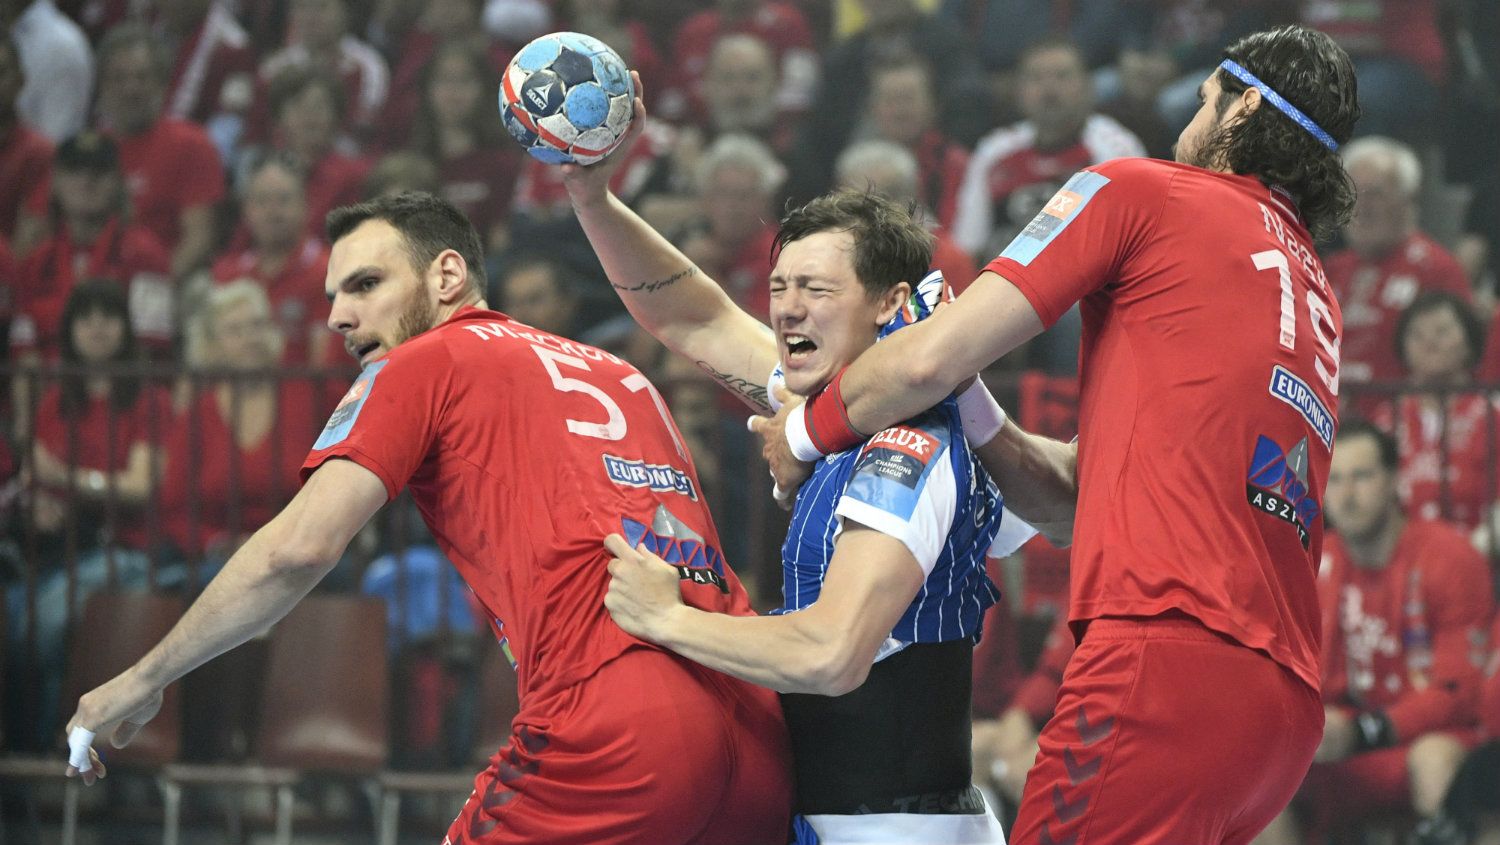 Katasztrofális vereséget mért a Veszprém a Szegedre a döntőben